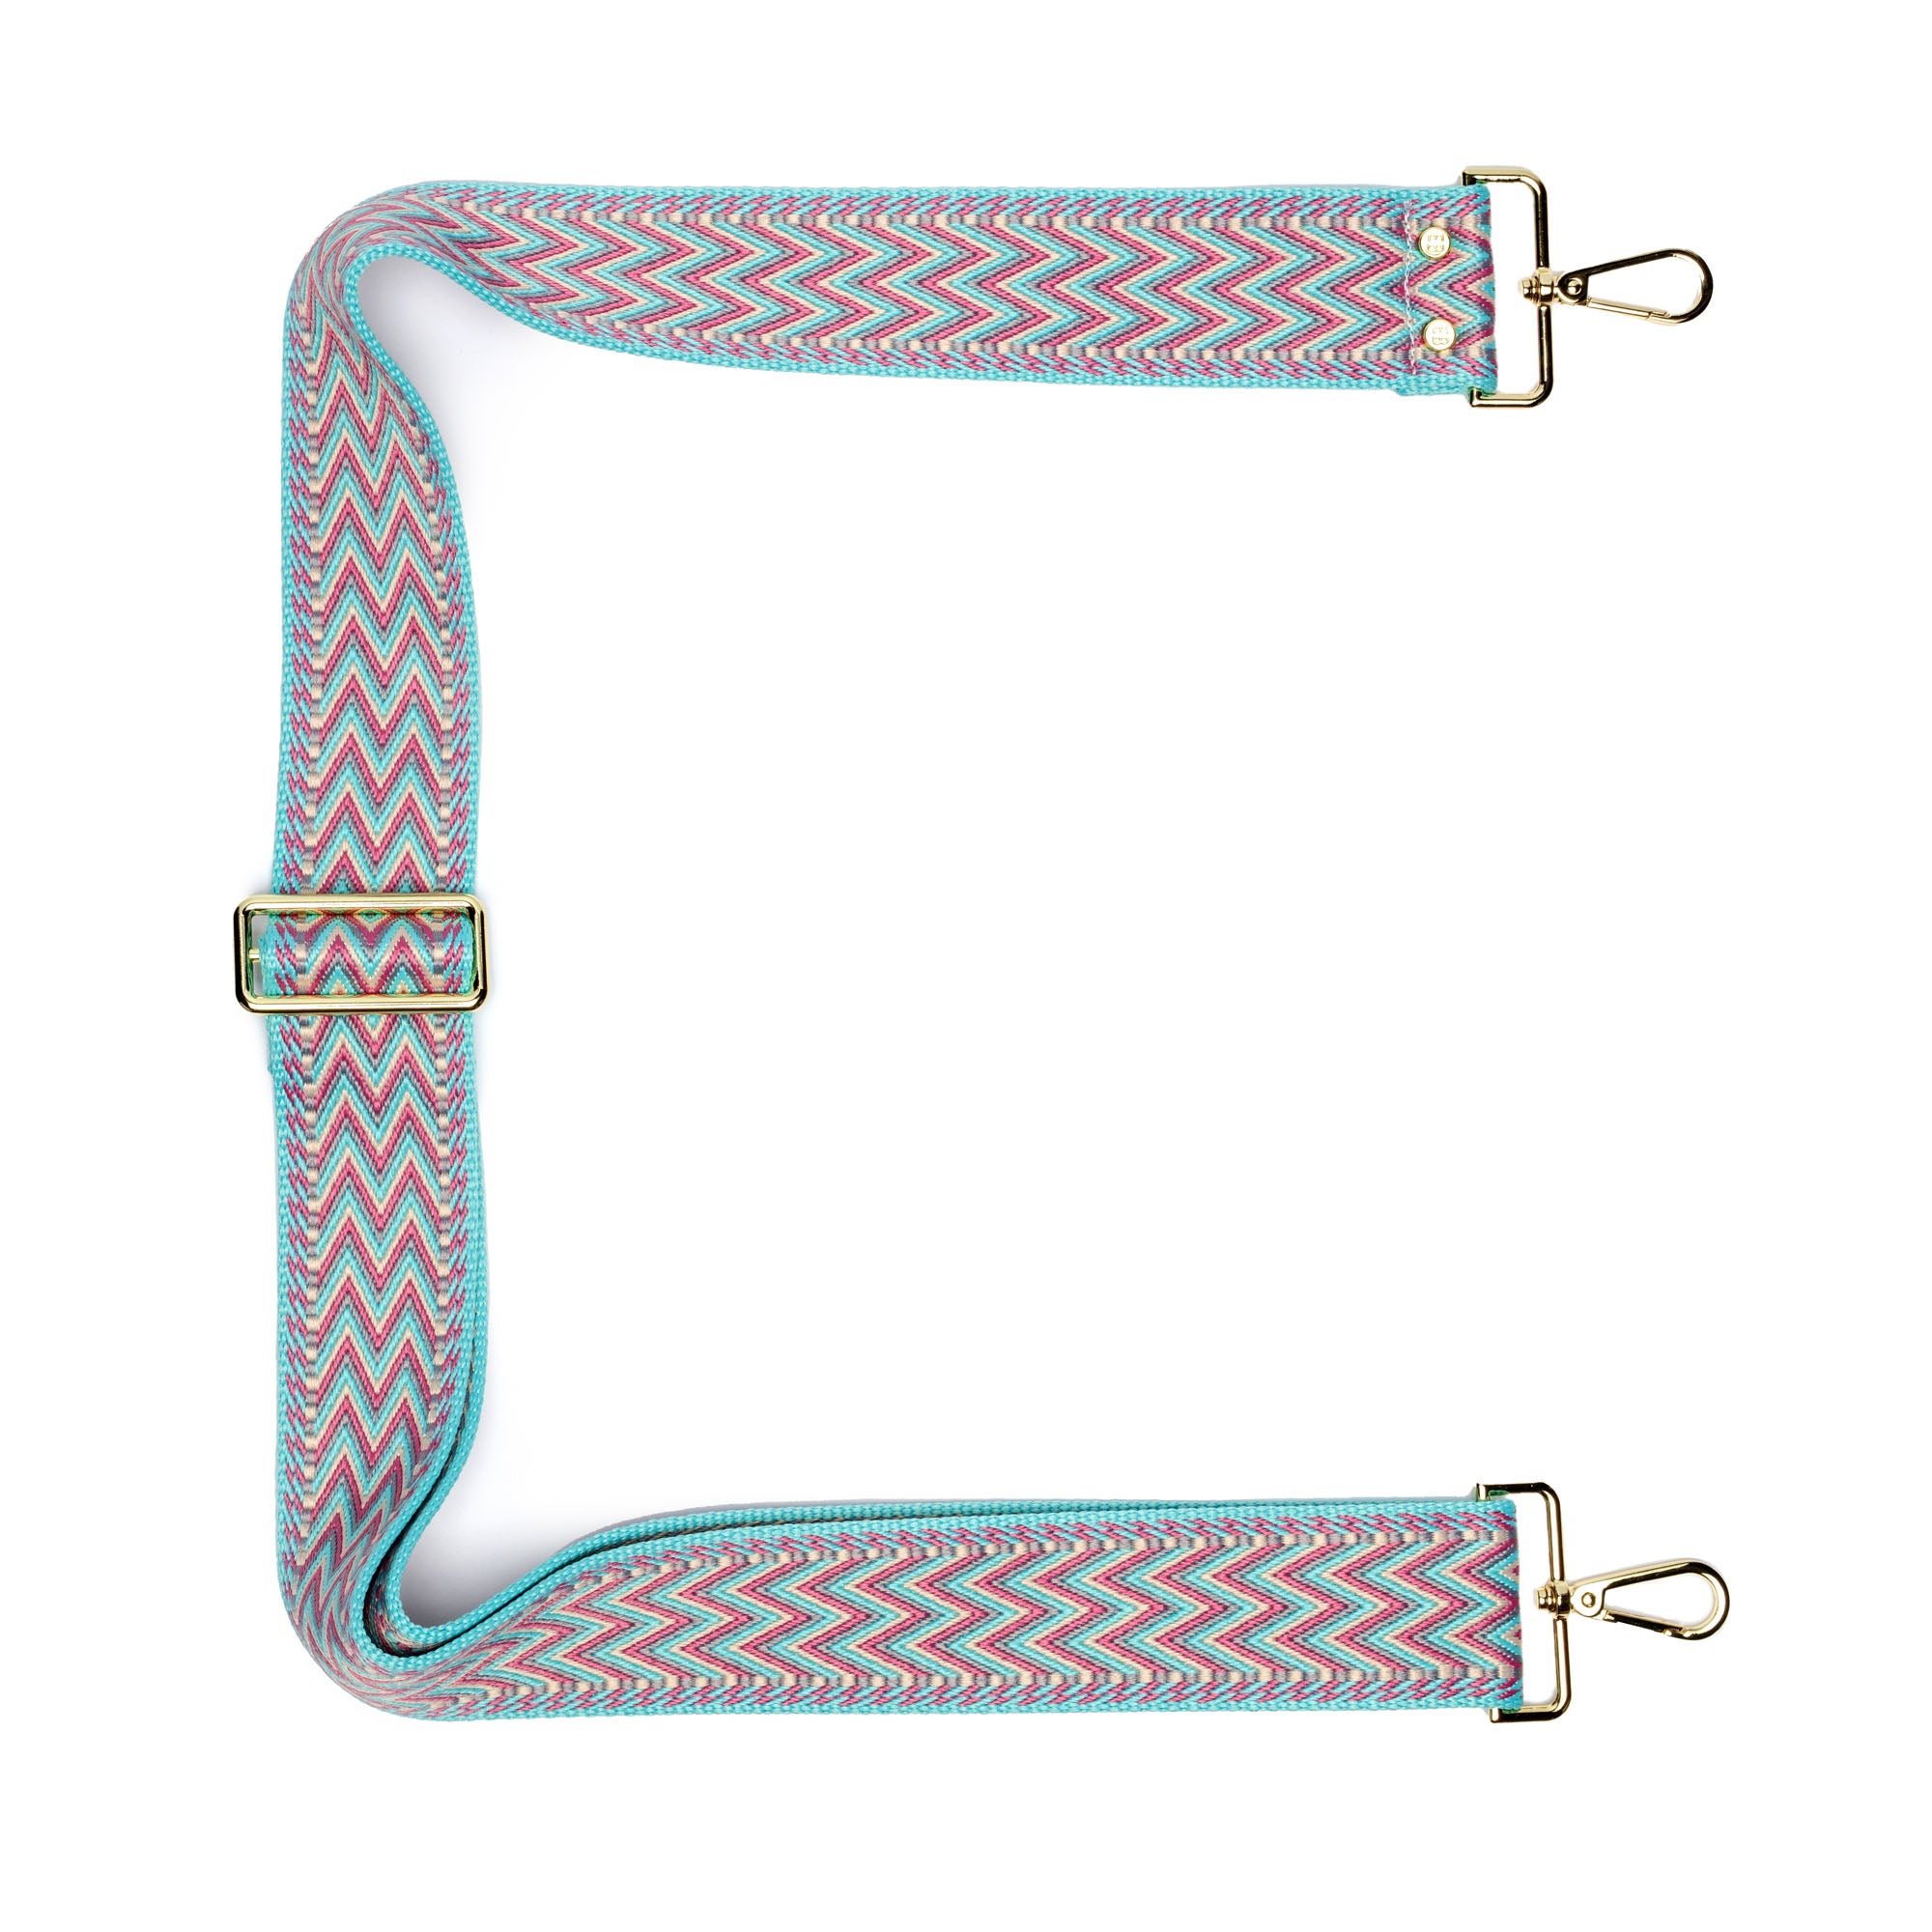 Crossbody strap - Aqua Grecian